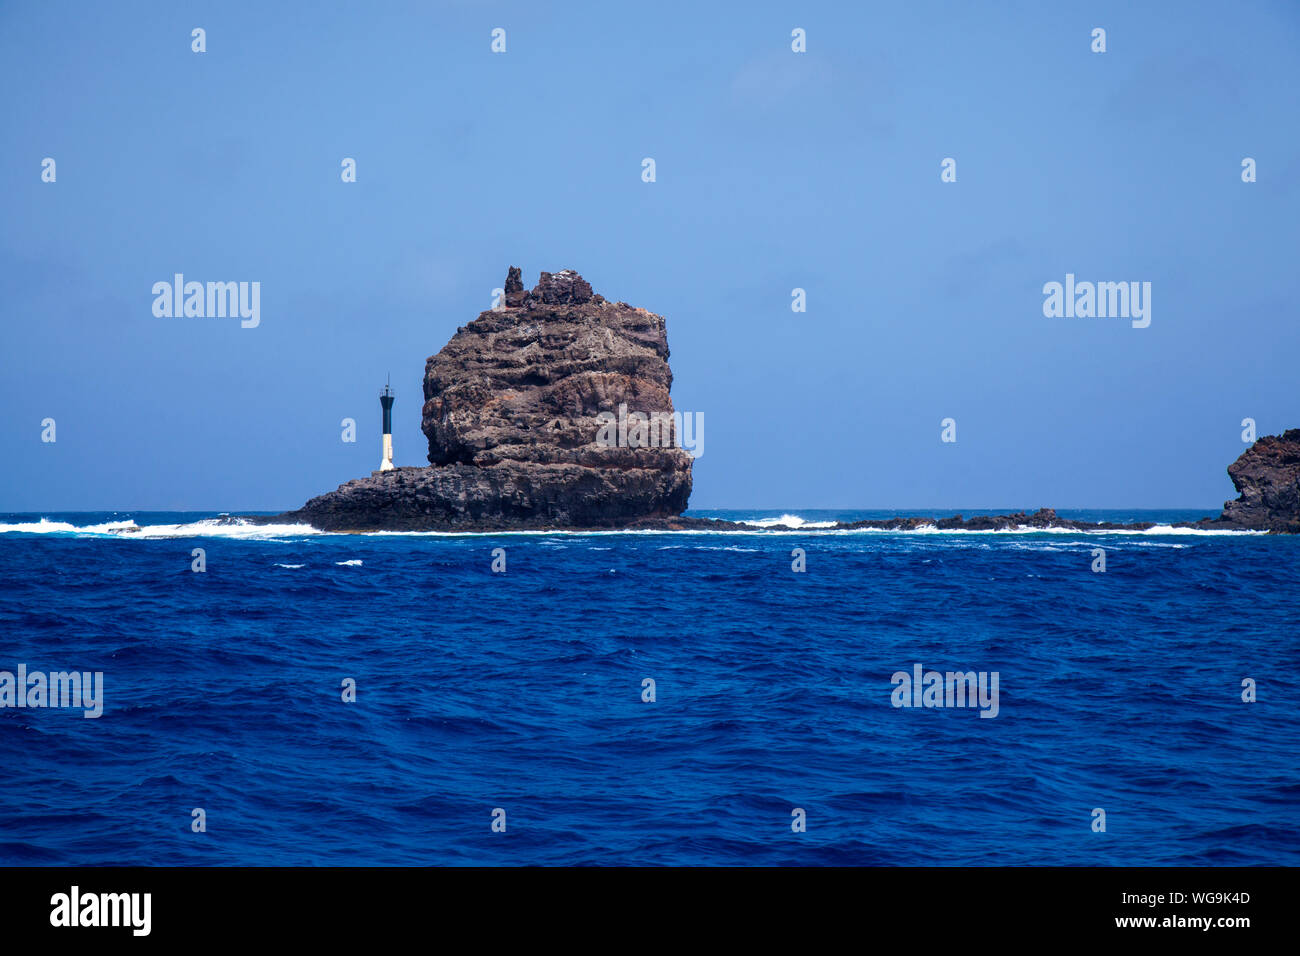 Meer reisen Hintergrund - Reisen auf seaferry von La Graciosa, kleine Inselchen Farion de Afuera Stockfoto